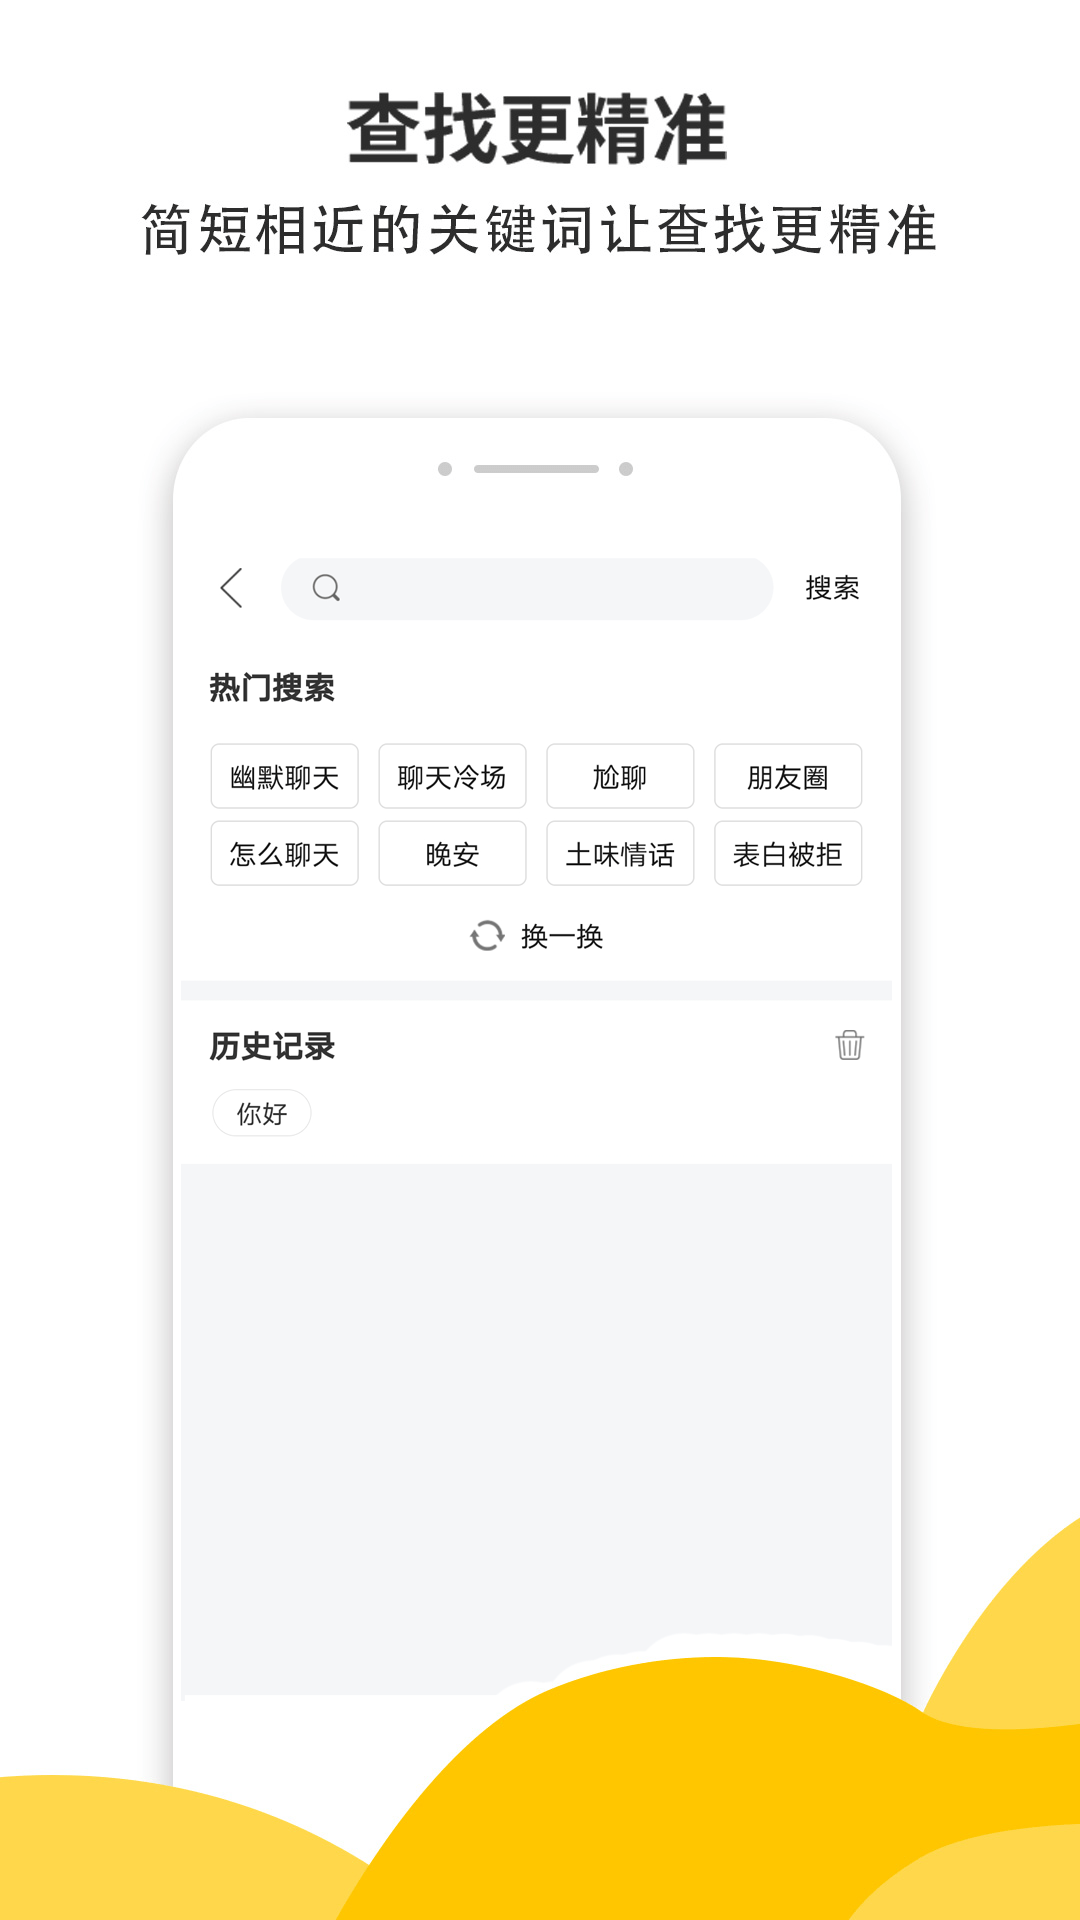 积木土味情话安卓版 V4.5.6